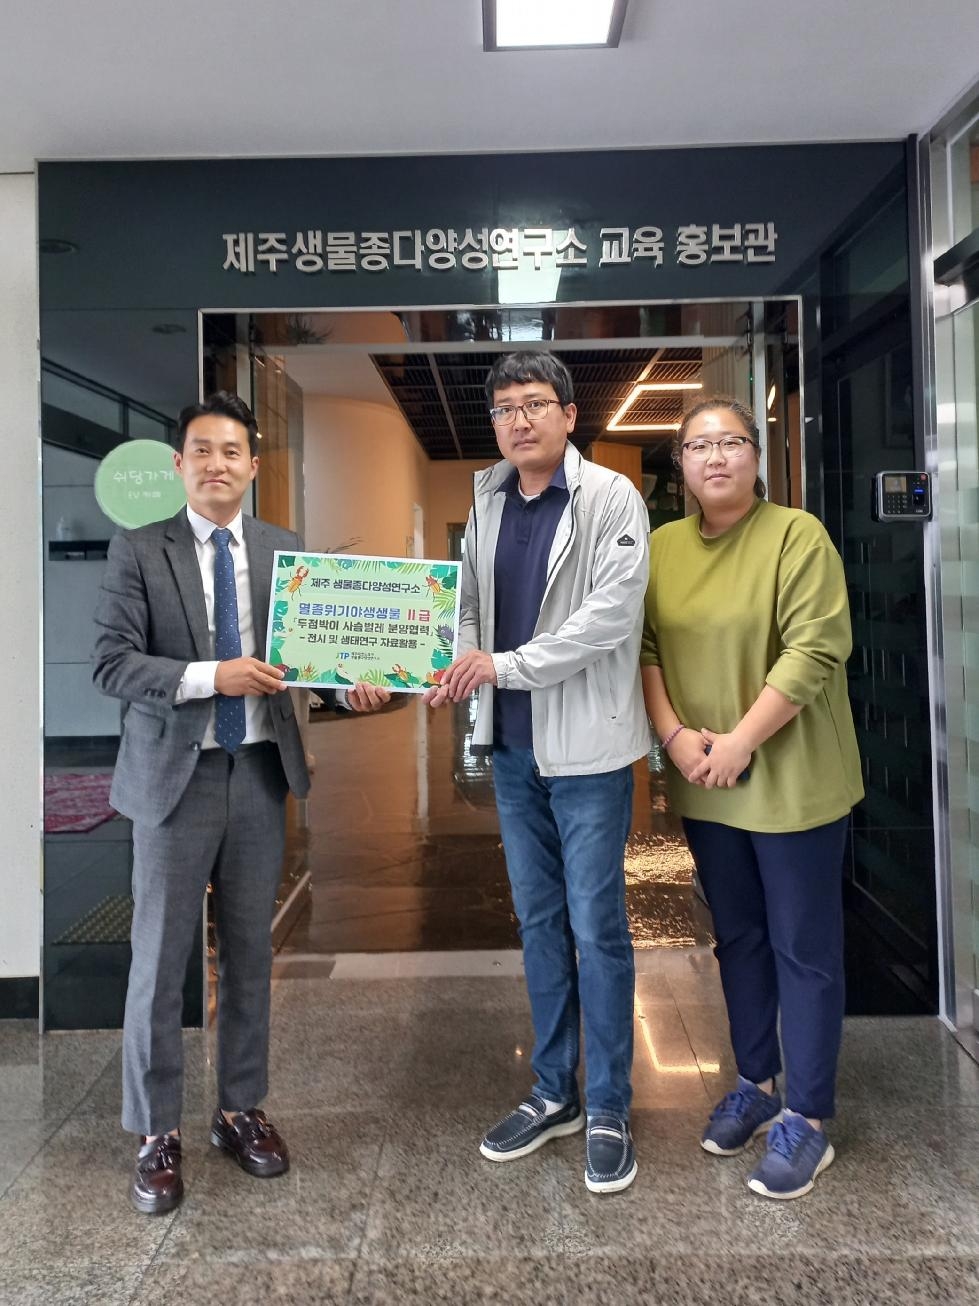 의왕 조류생태과학관, 멸종 위기 야생생물 복원 앞장